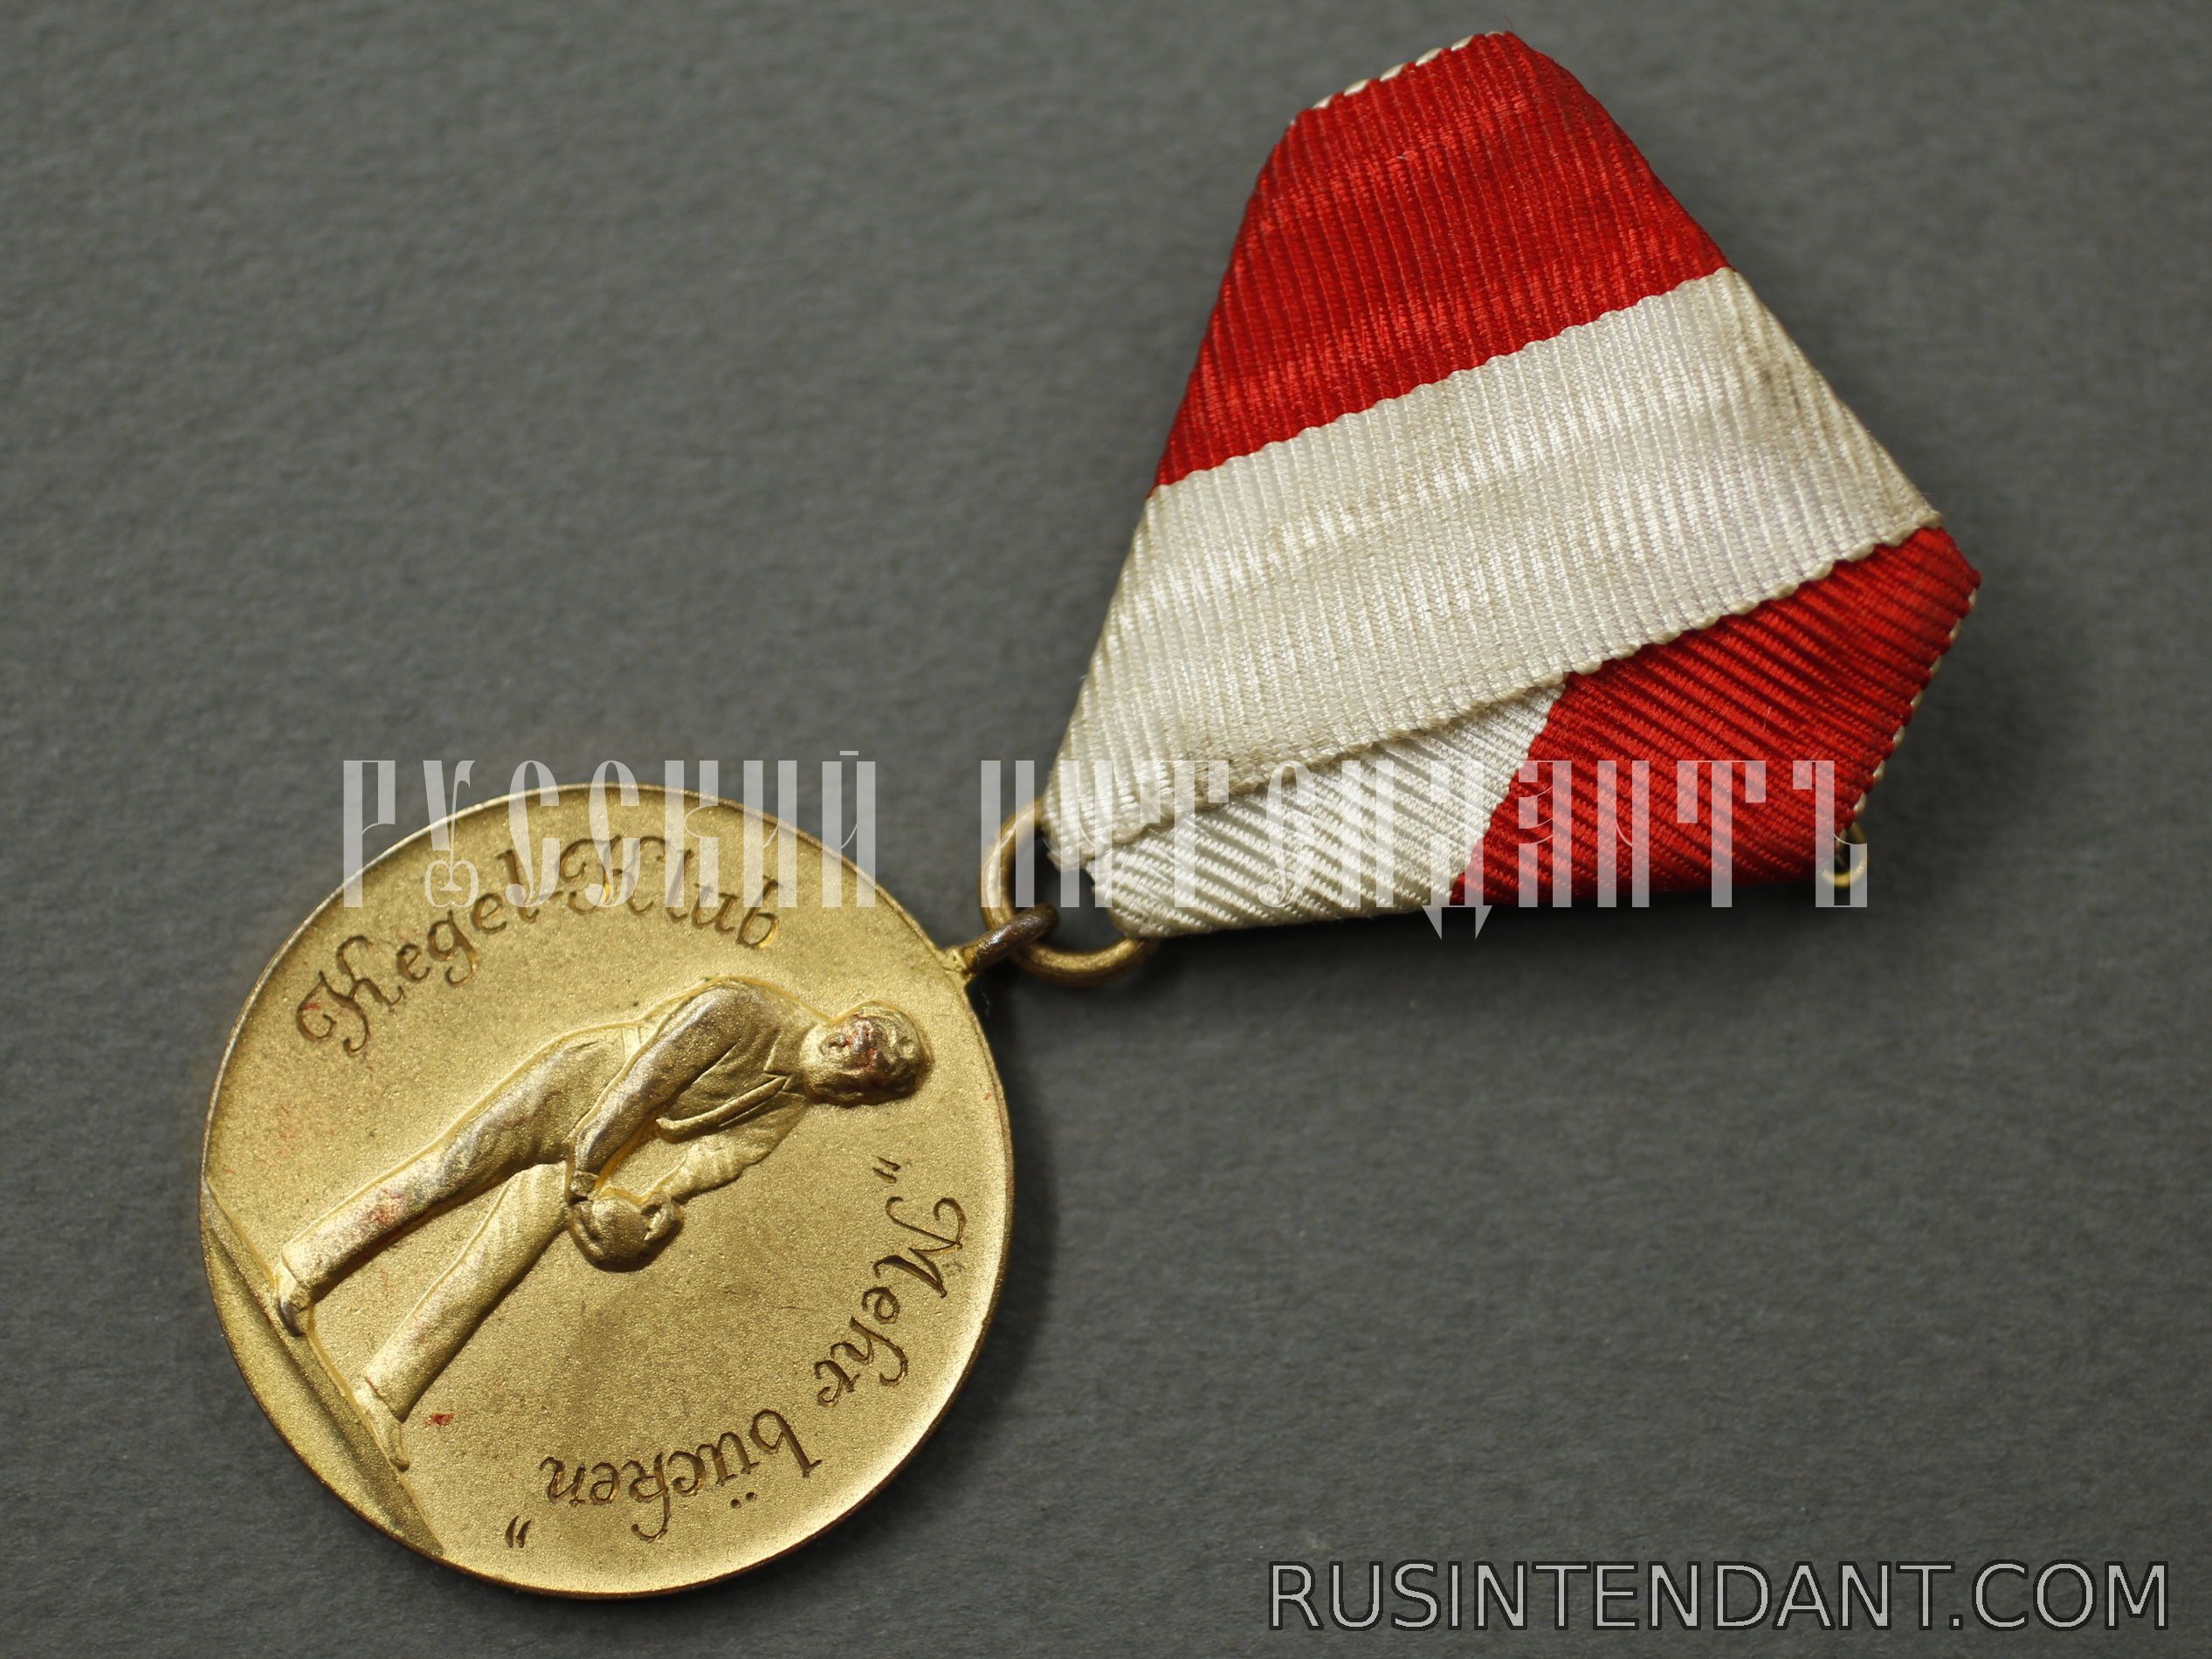 Фото 3: Медаль Кегельбан-клуба 